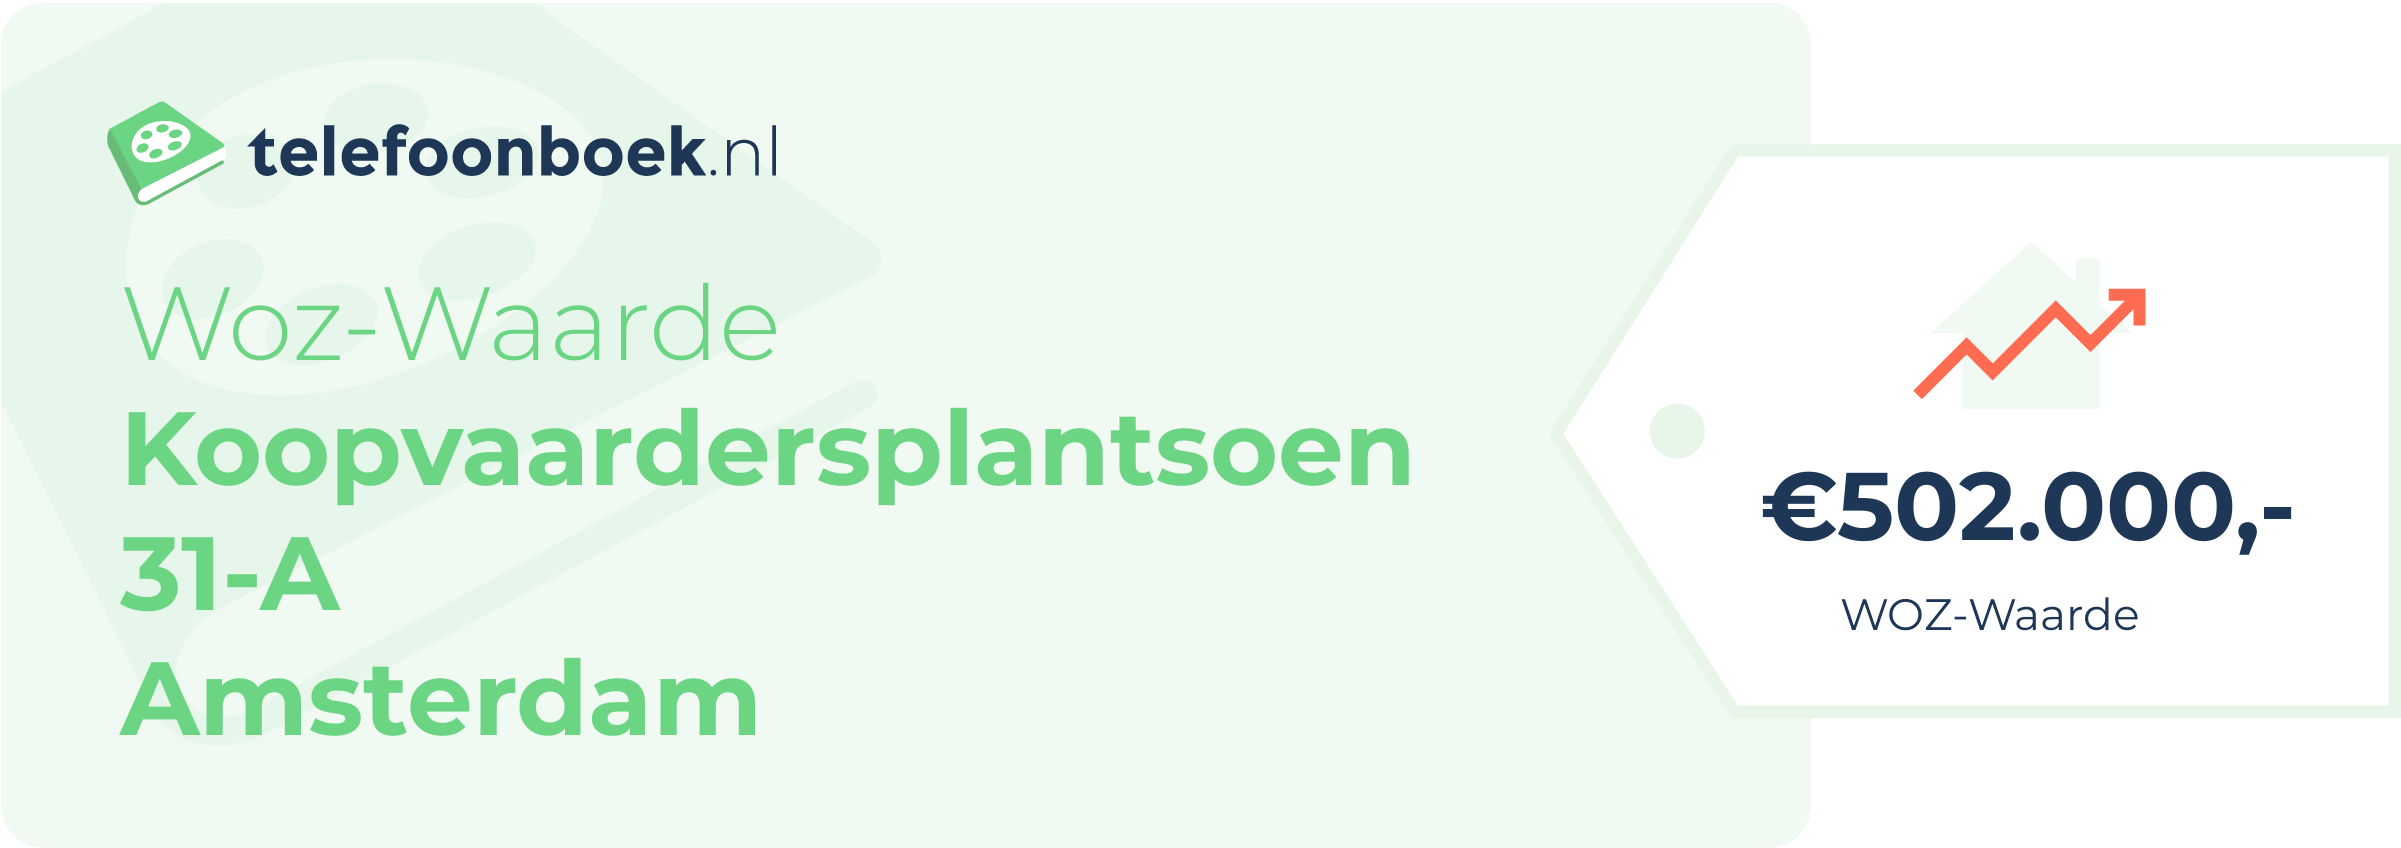 WOZ-waarde Koopvaardersplantsoen 31-A Amsterdam